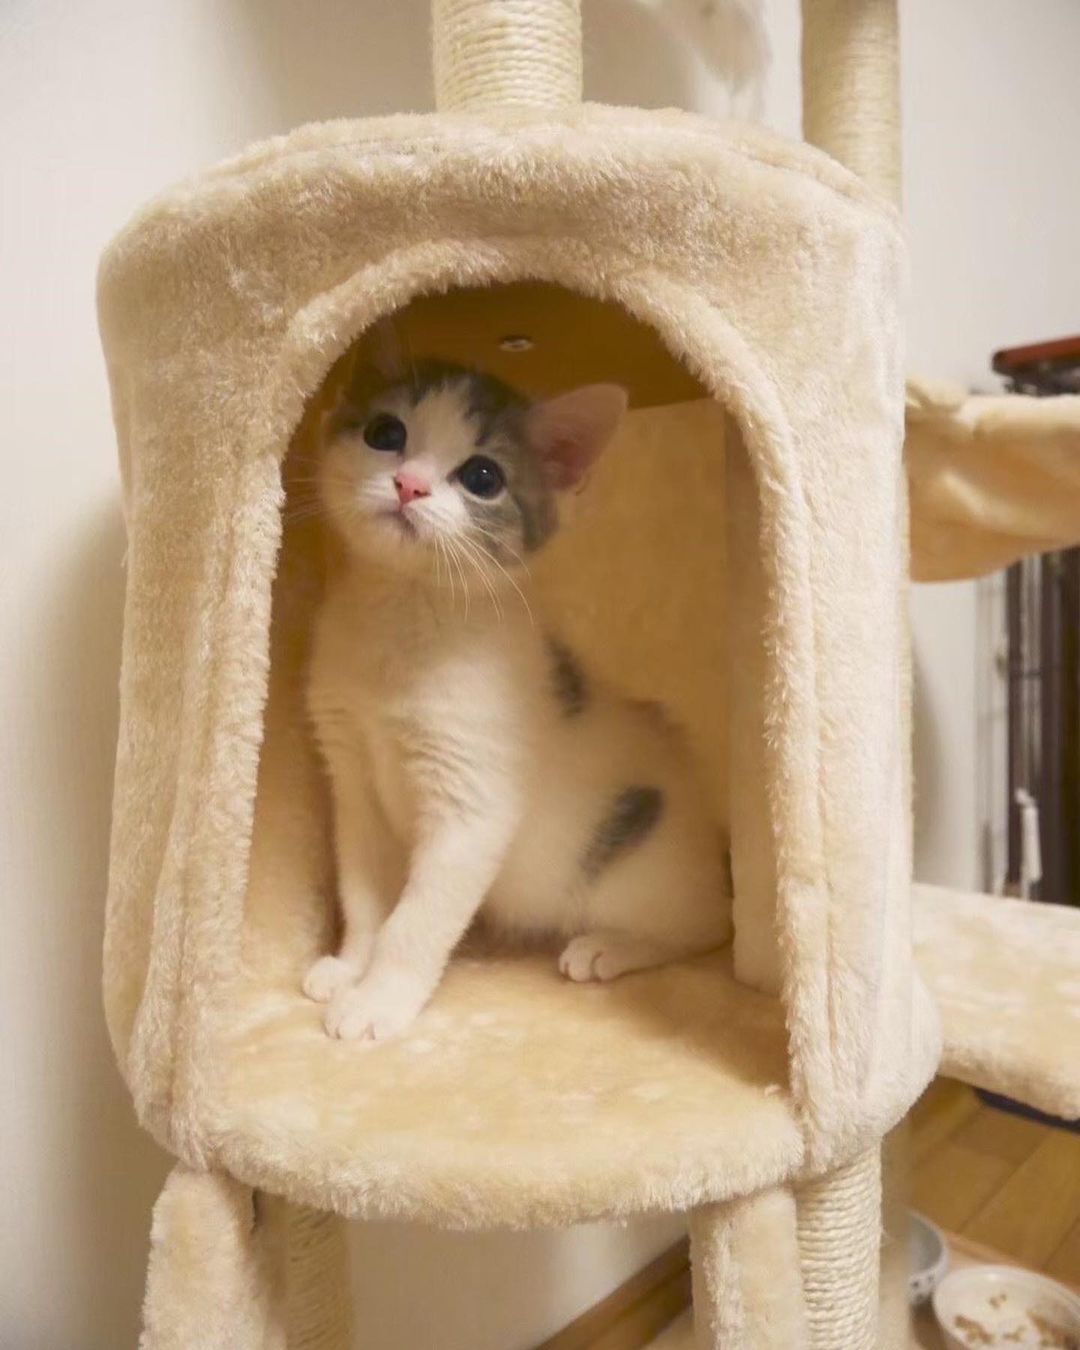 キャットタワーで遊ぶ子猫